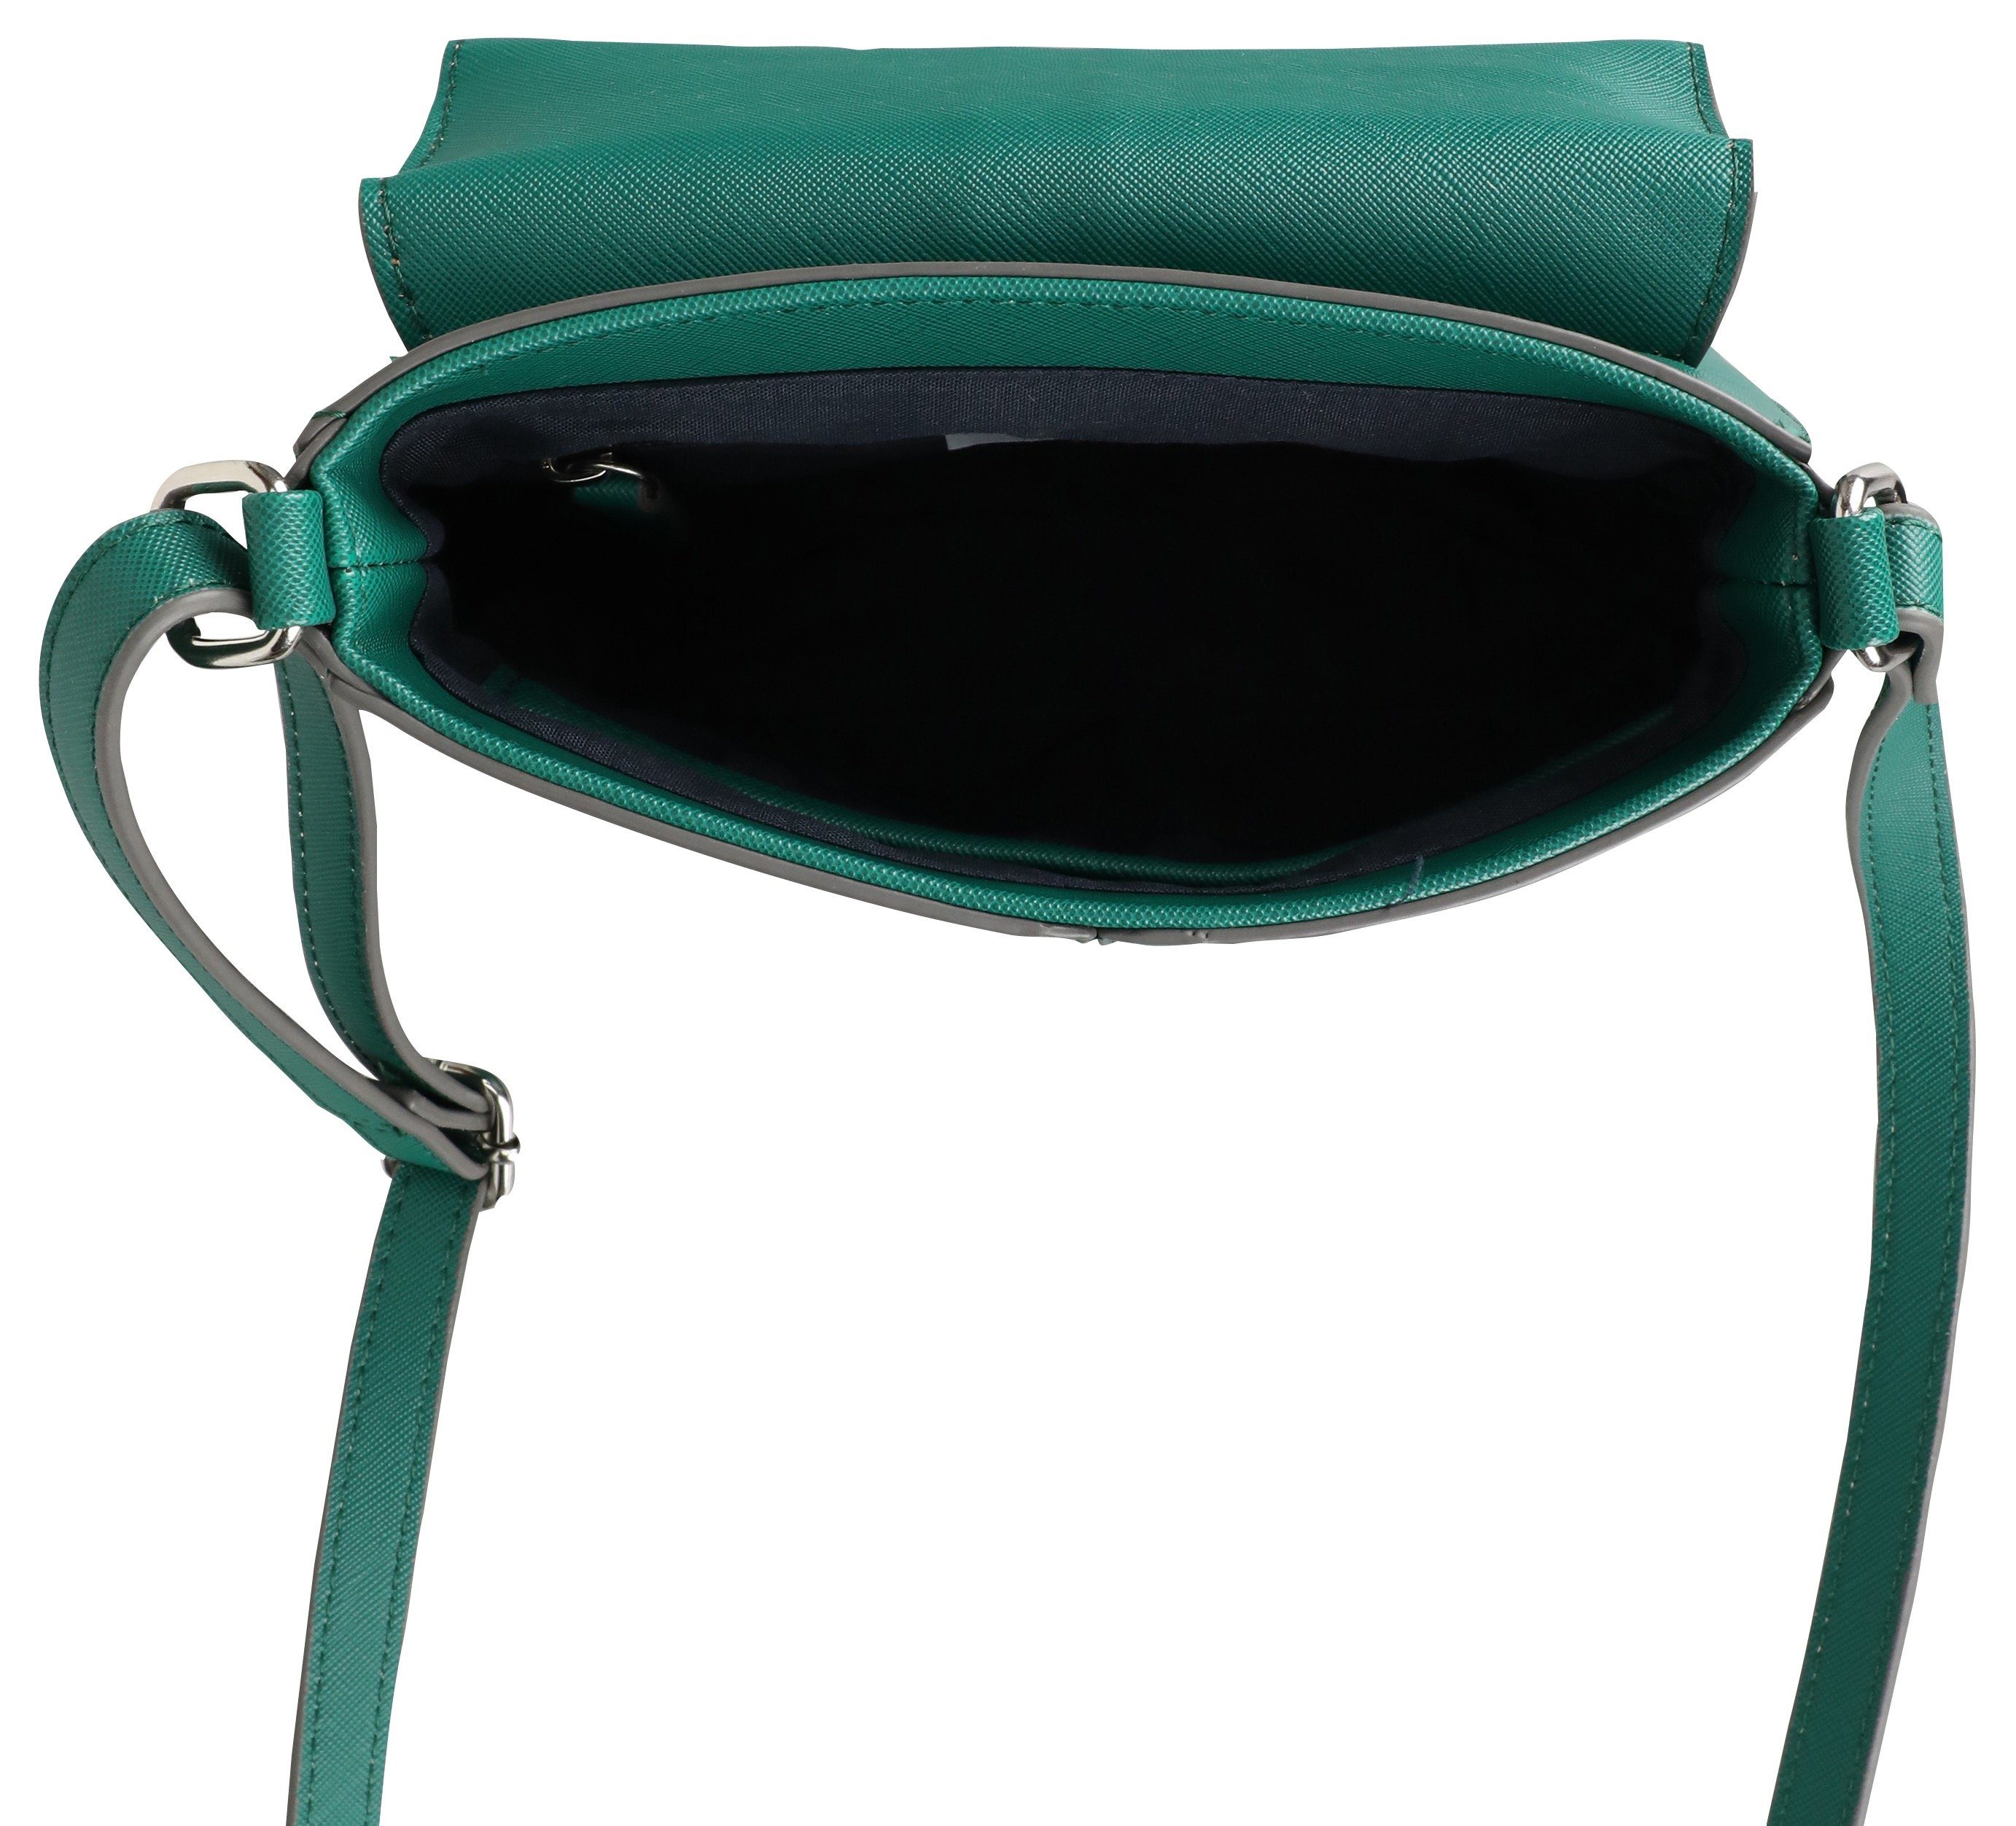 Damen Umhängetaschen GERRY WEBER Bags Umhängetasche colourpatch shoulderbag shf, mit kleiner Münztasche